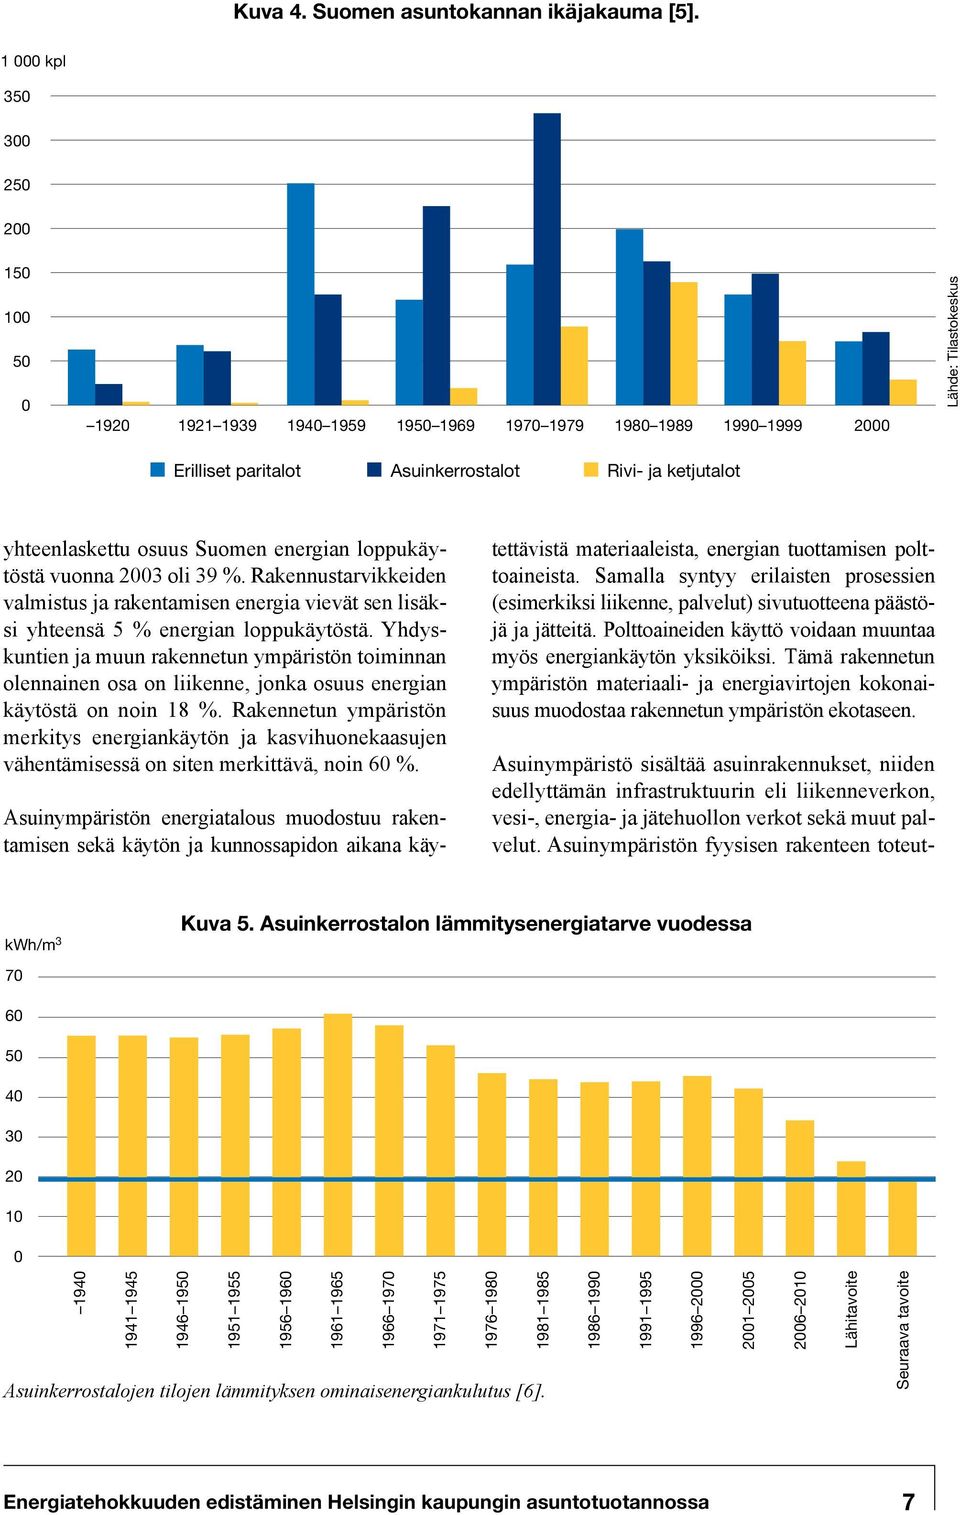 yhteenlaskettu osuus Suomen energian loppukäytöstä vuonna 2003 oli 39 %. Rakennustarvikkeiden valmistus ja rakentamisen energia vievät sen lisäksi yhteensä 5 % energian loppukäytöstä.